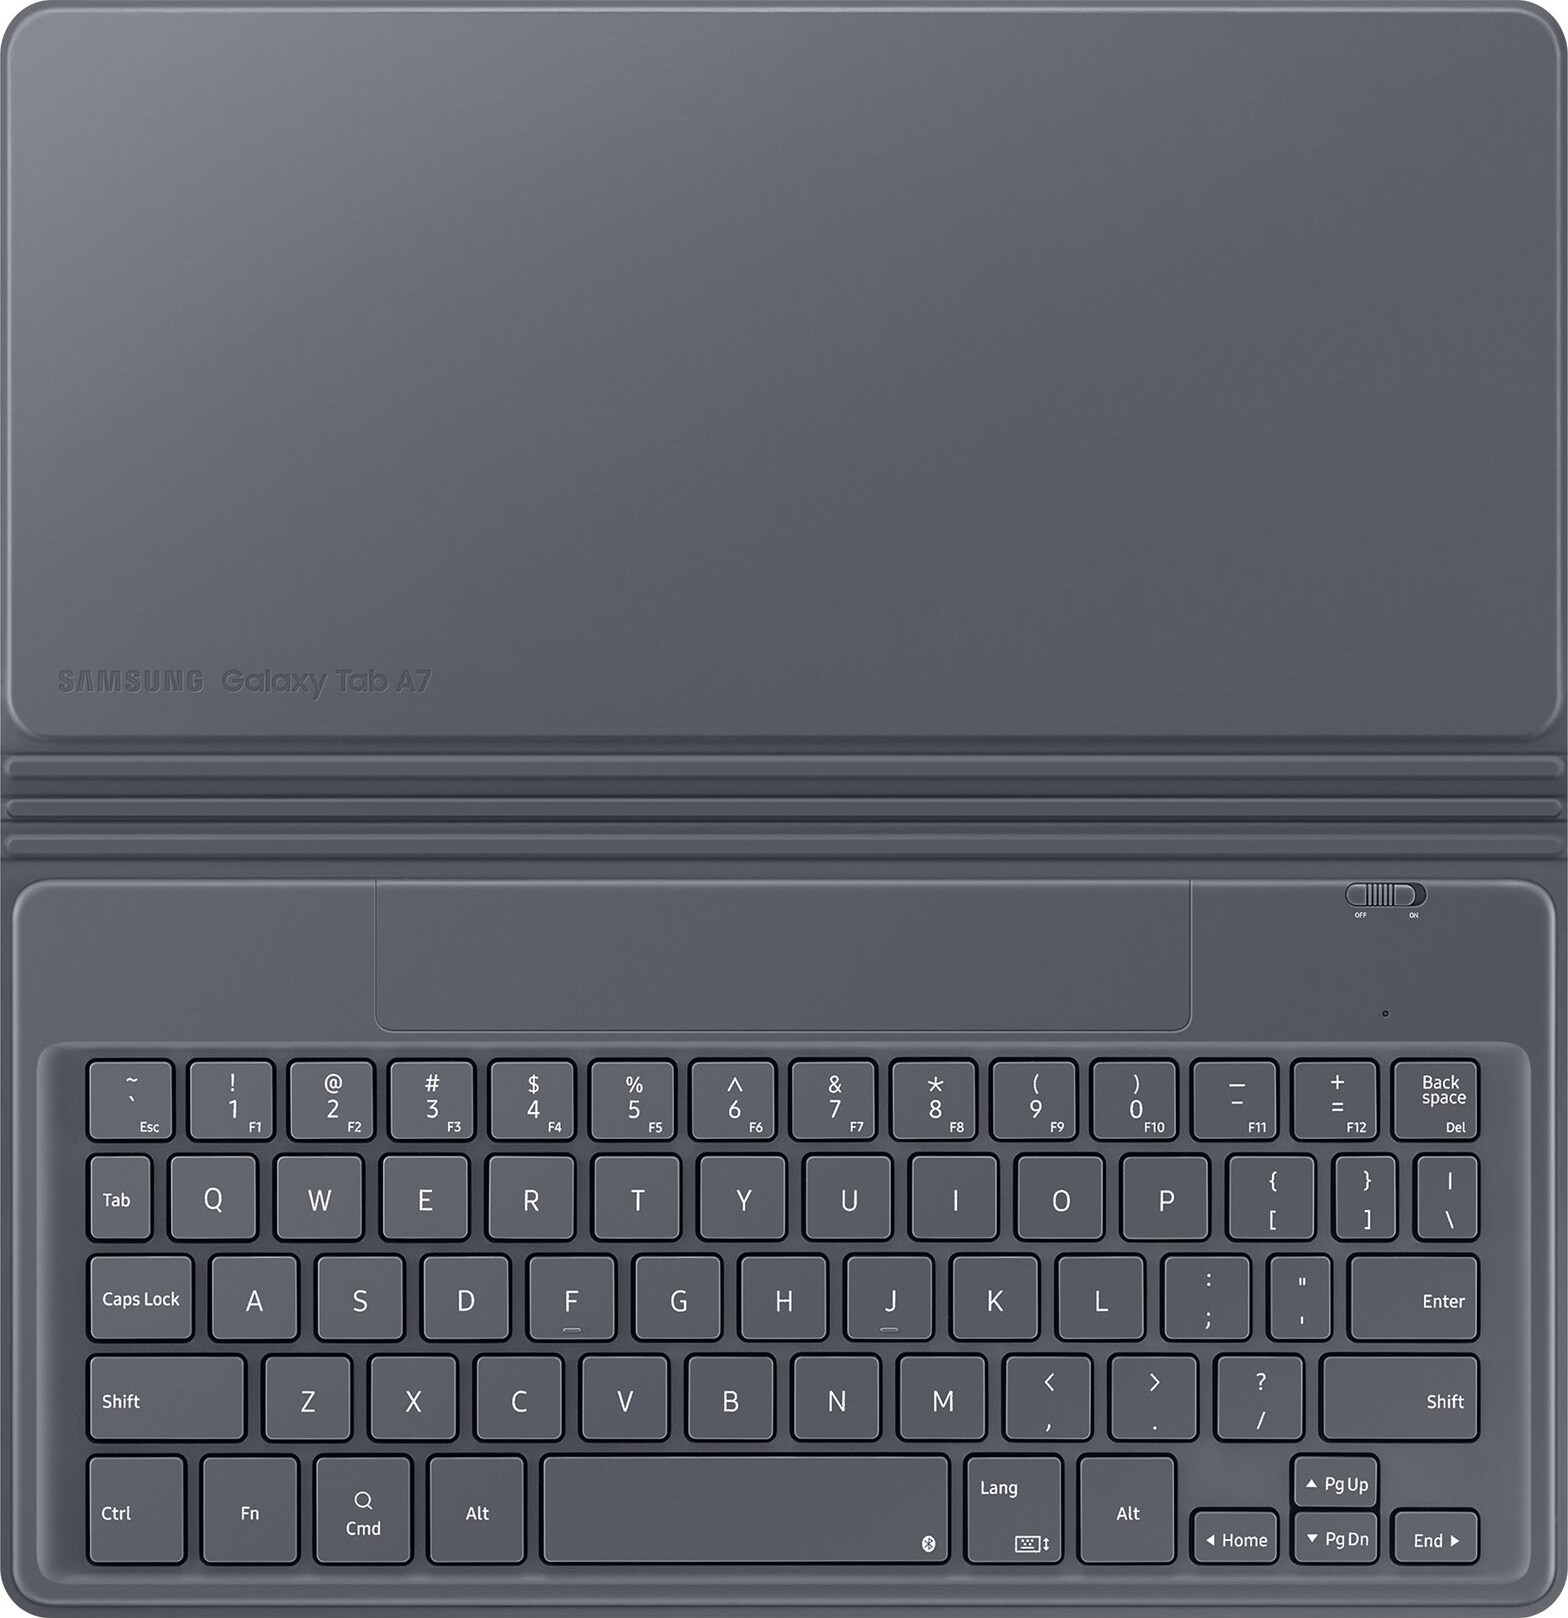 Samsung fodral och tangentbord för Galaxy Tab A7 - Elgiganten